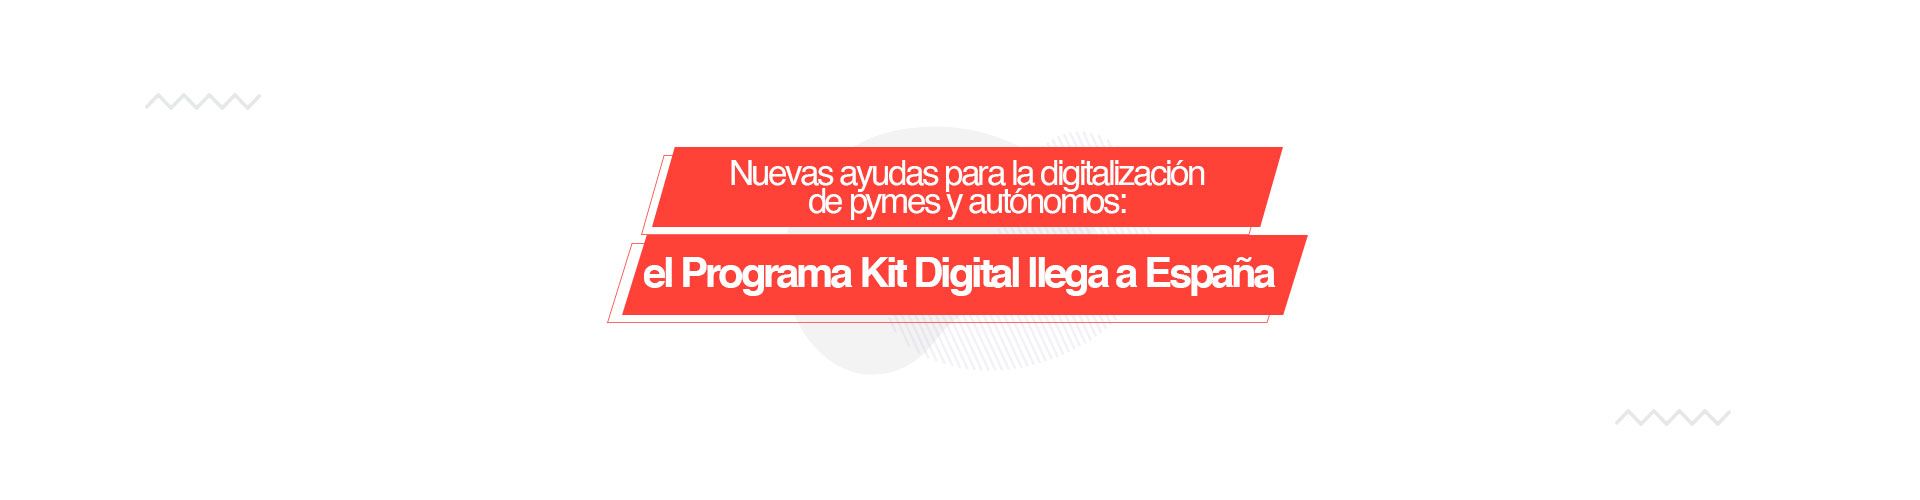 programa kit digital Nuevas ayudas para la digitalización de pymes y autónomos: el Programa Kit Digital llega a España